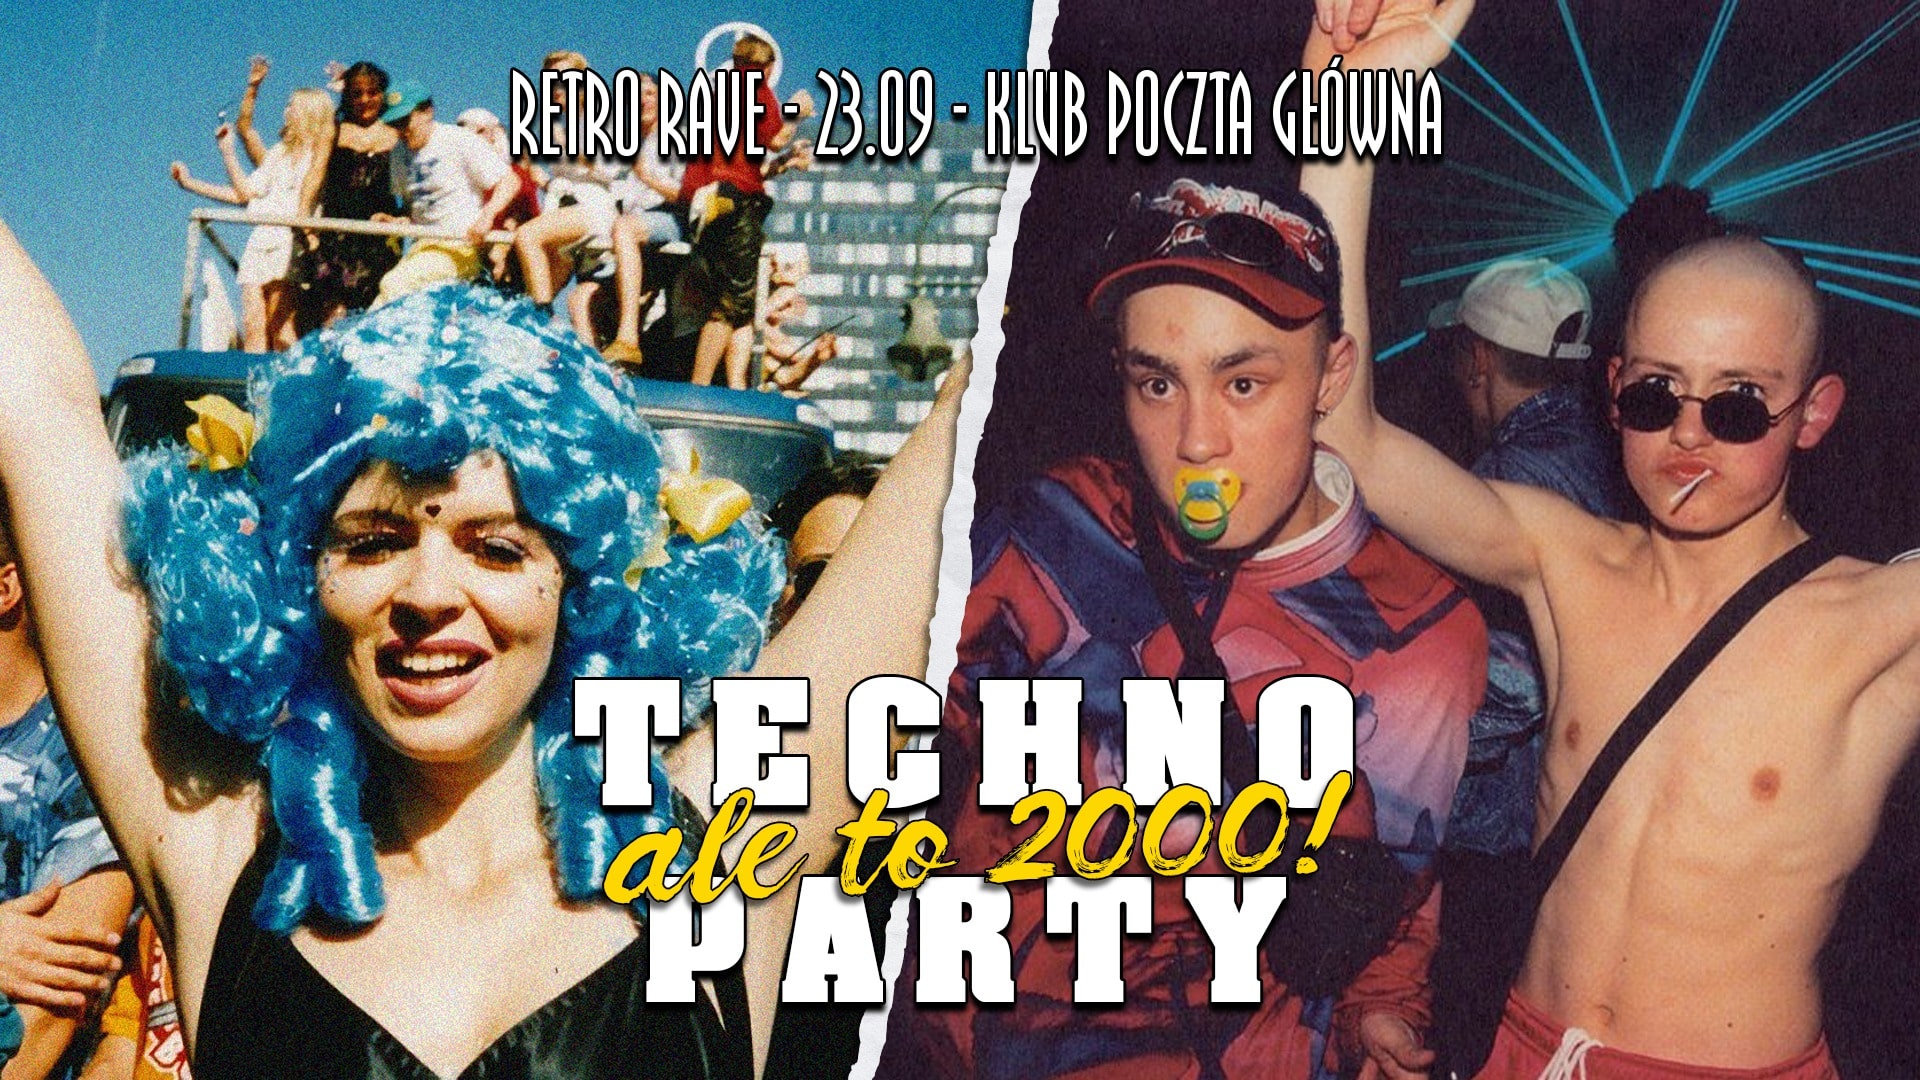 Retro Rave: Techno party ale to 2000!